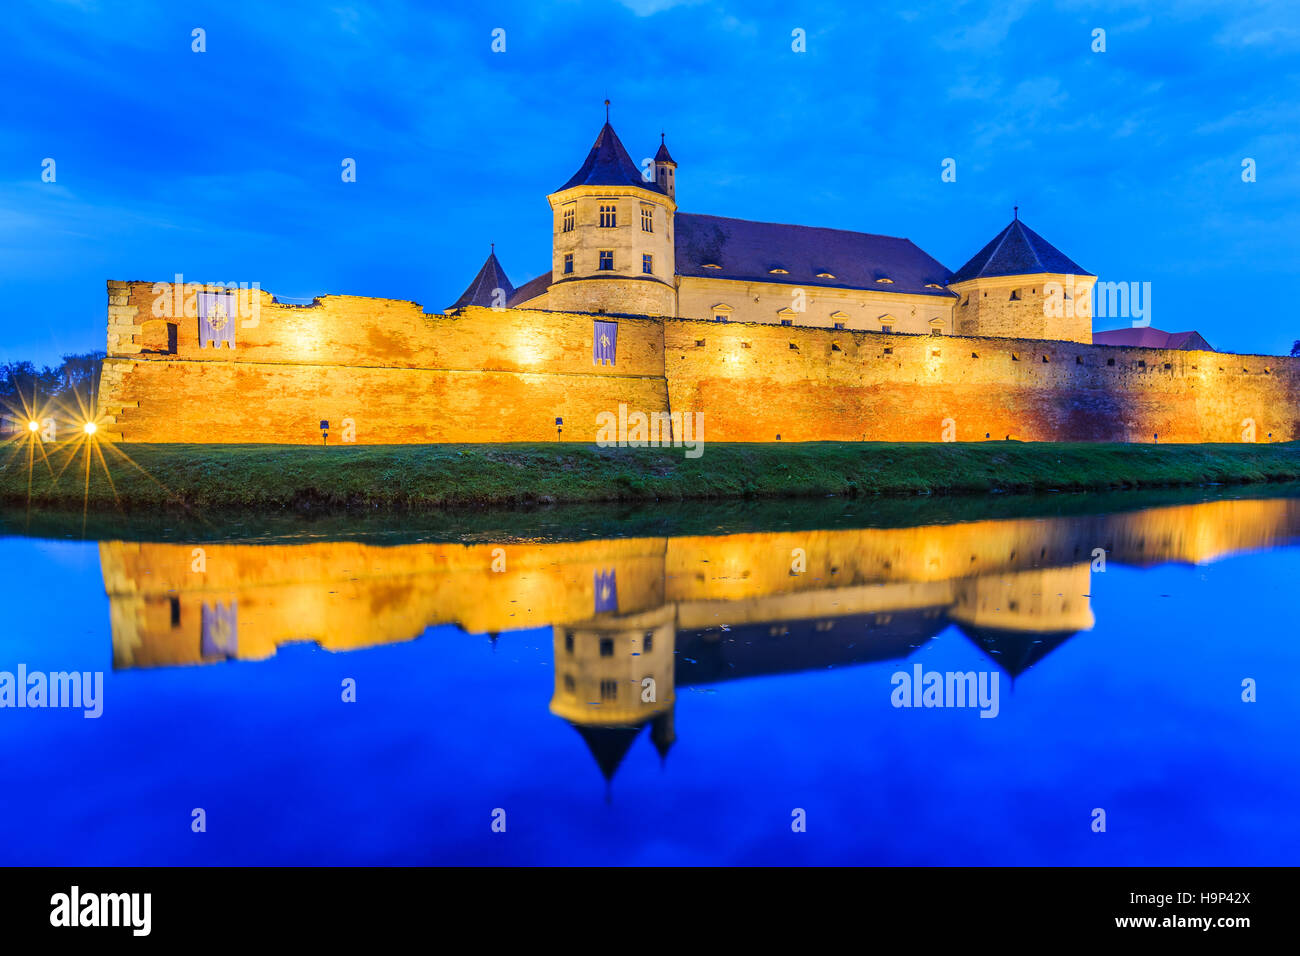 Fagaras, kleine Stadt in Siebenbürgen, Rumänien. Mittelalterliche Festung. Stockfoto